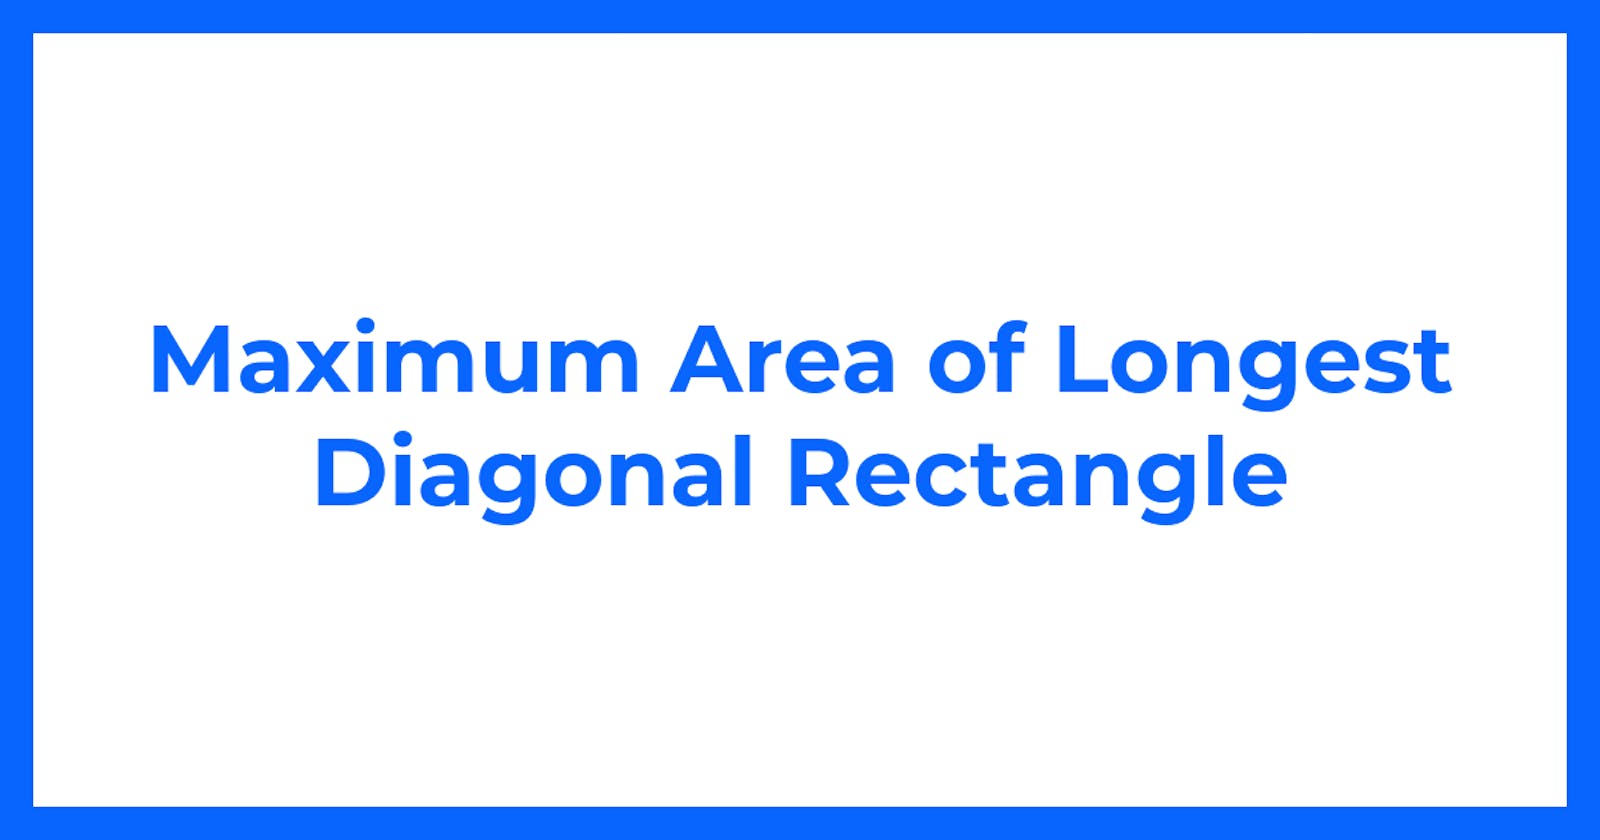 Maximum Area of Longest Diagonal Rectangle